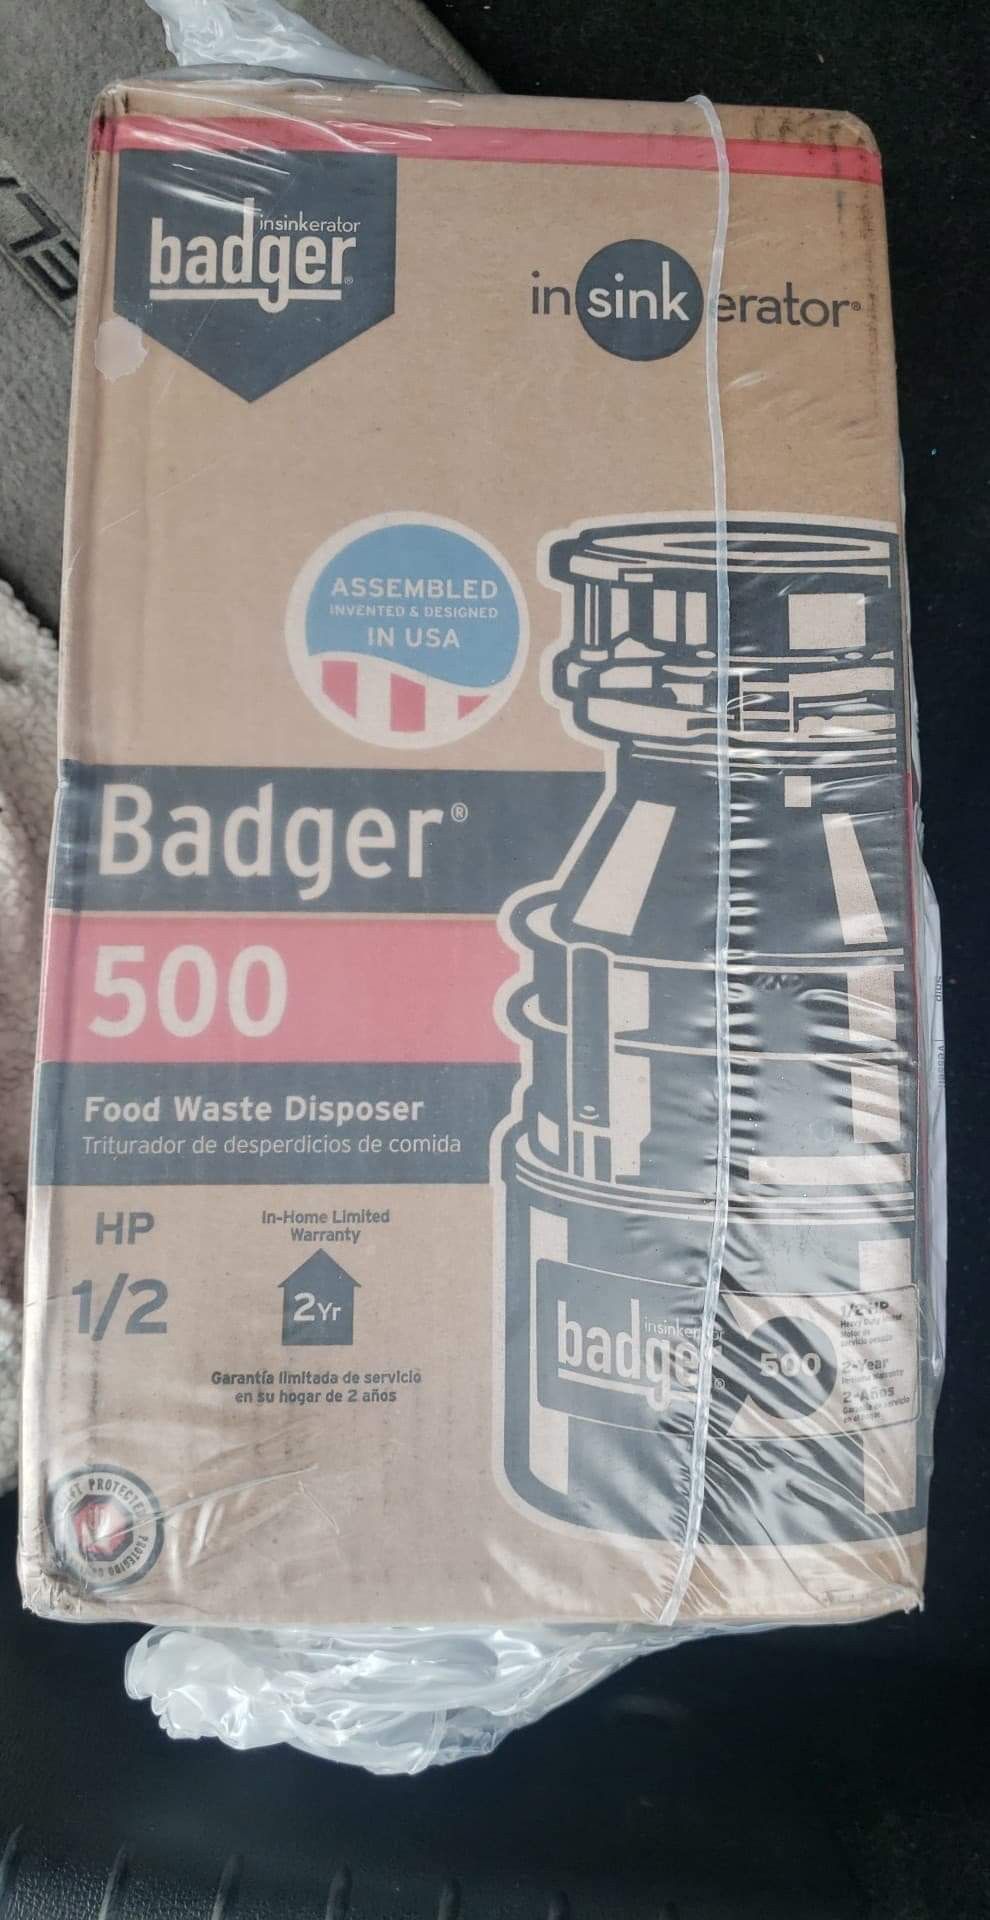 Badger garbage disposal